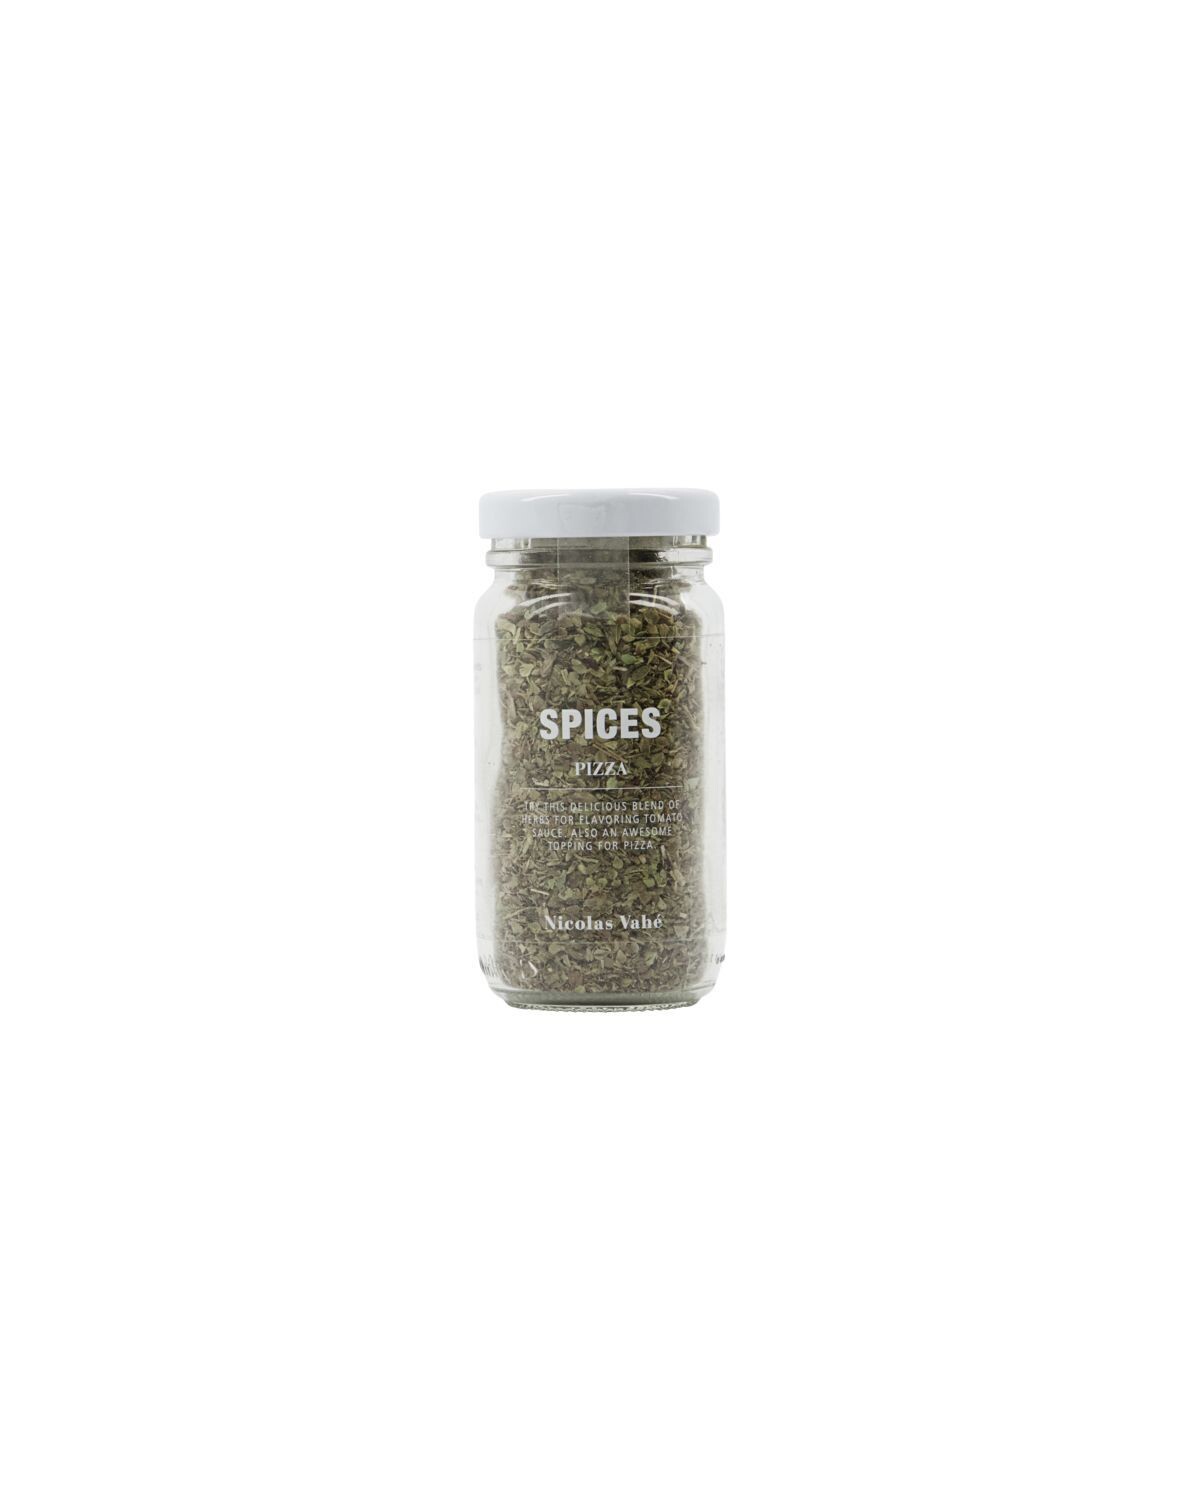 Spices, Oregano, basil & marjoram